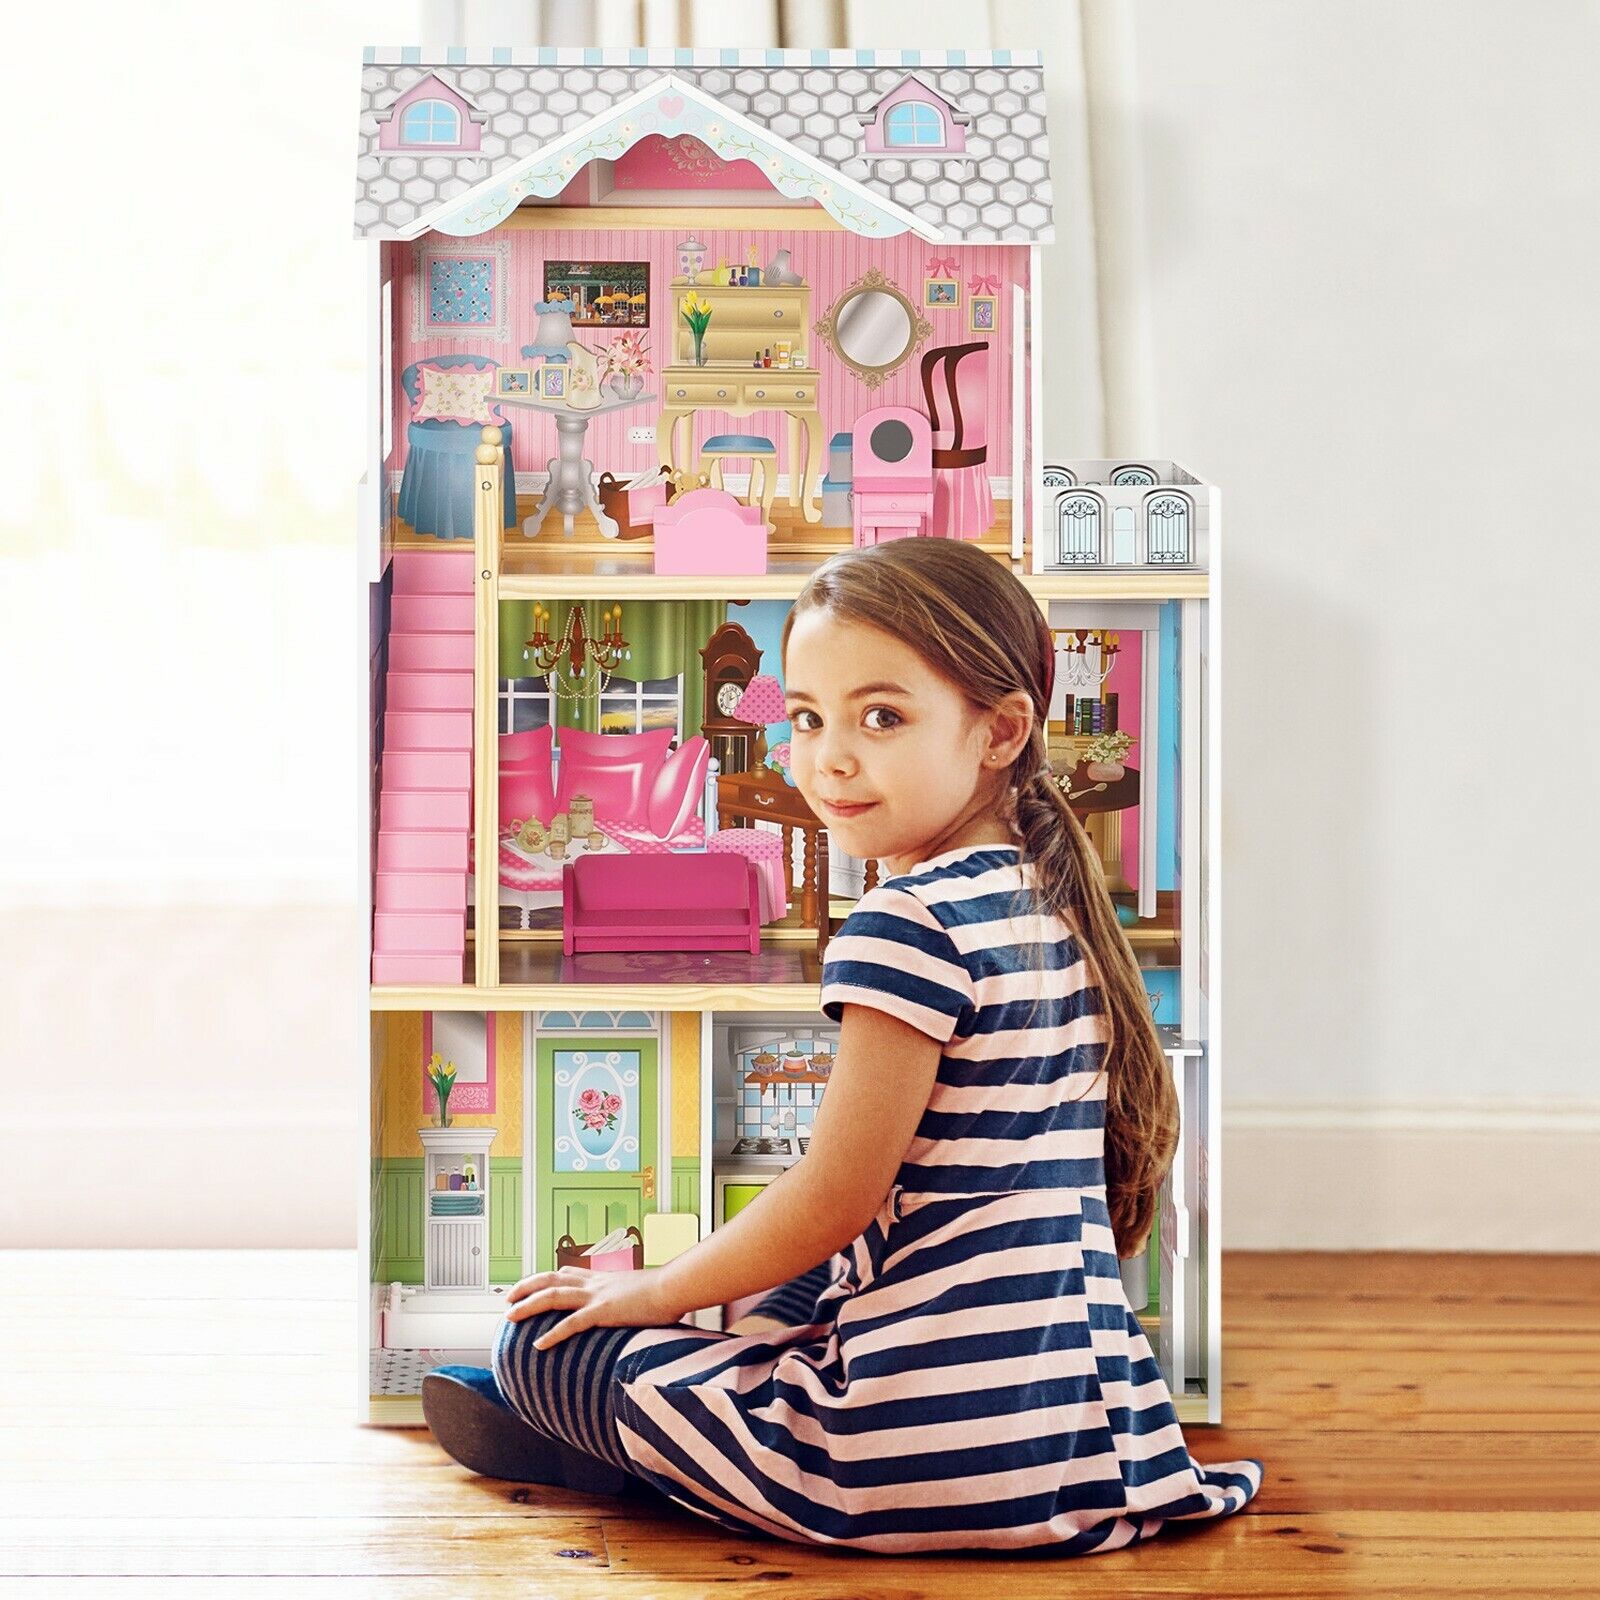 Children's House Toys For Girls - TryKid